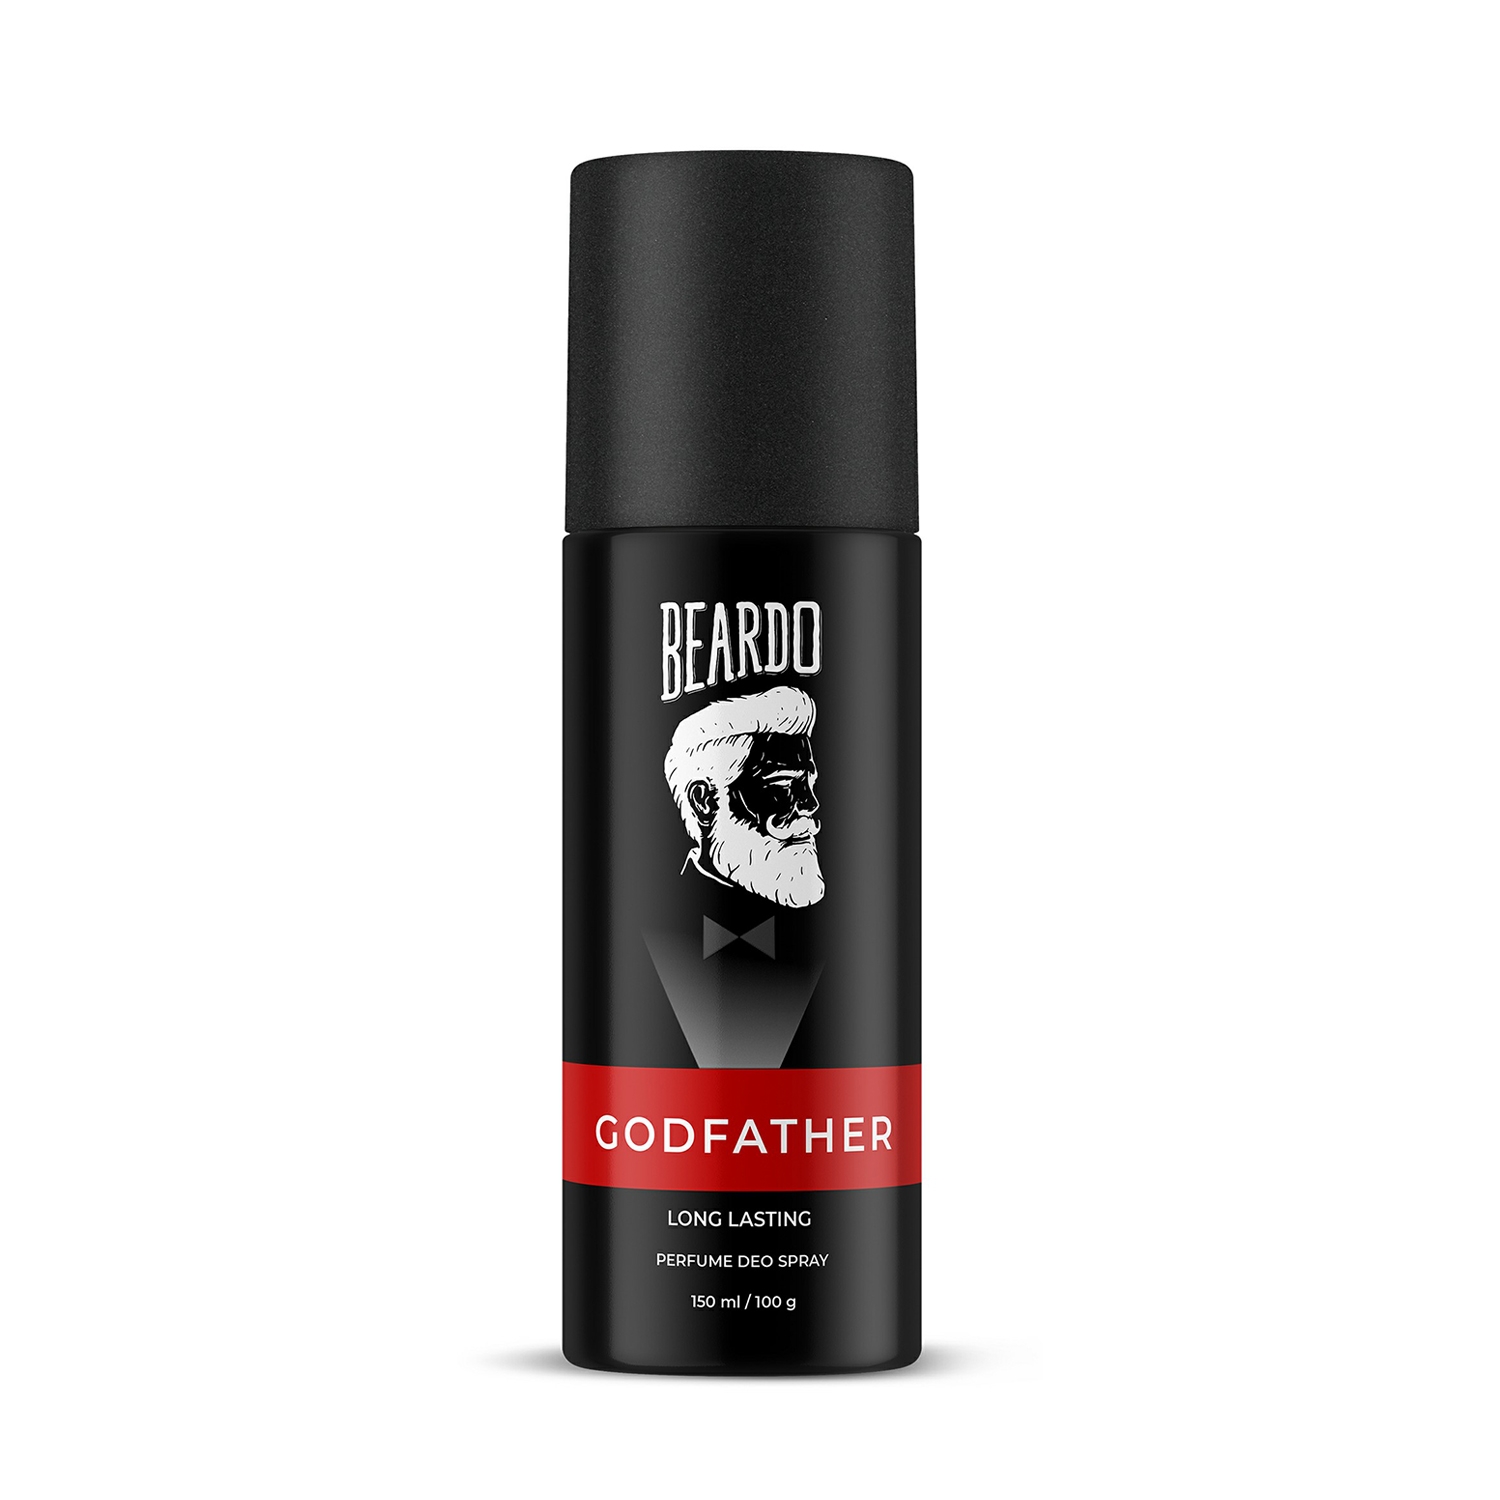 Beardo | Beardo Godfather Long Lasting Perfume Deo Spray (150ml)